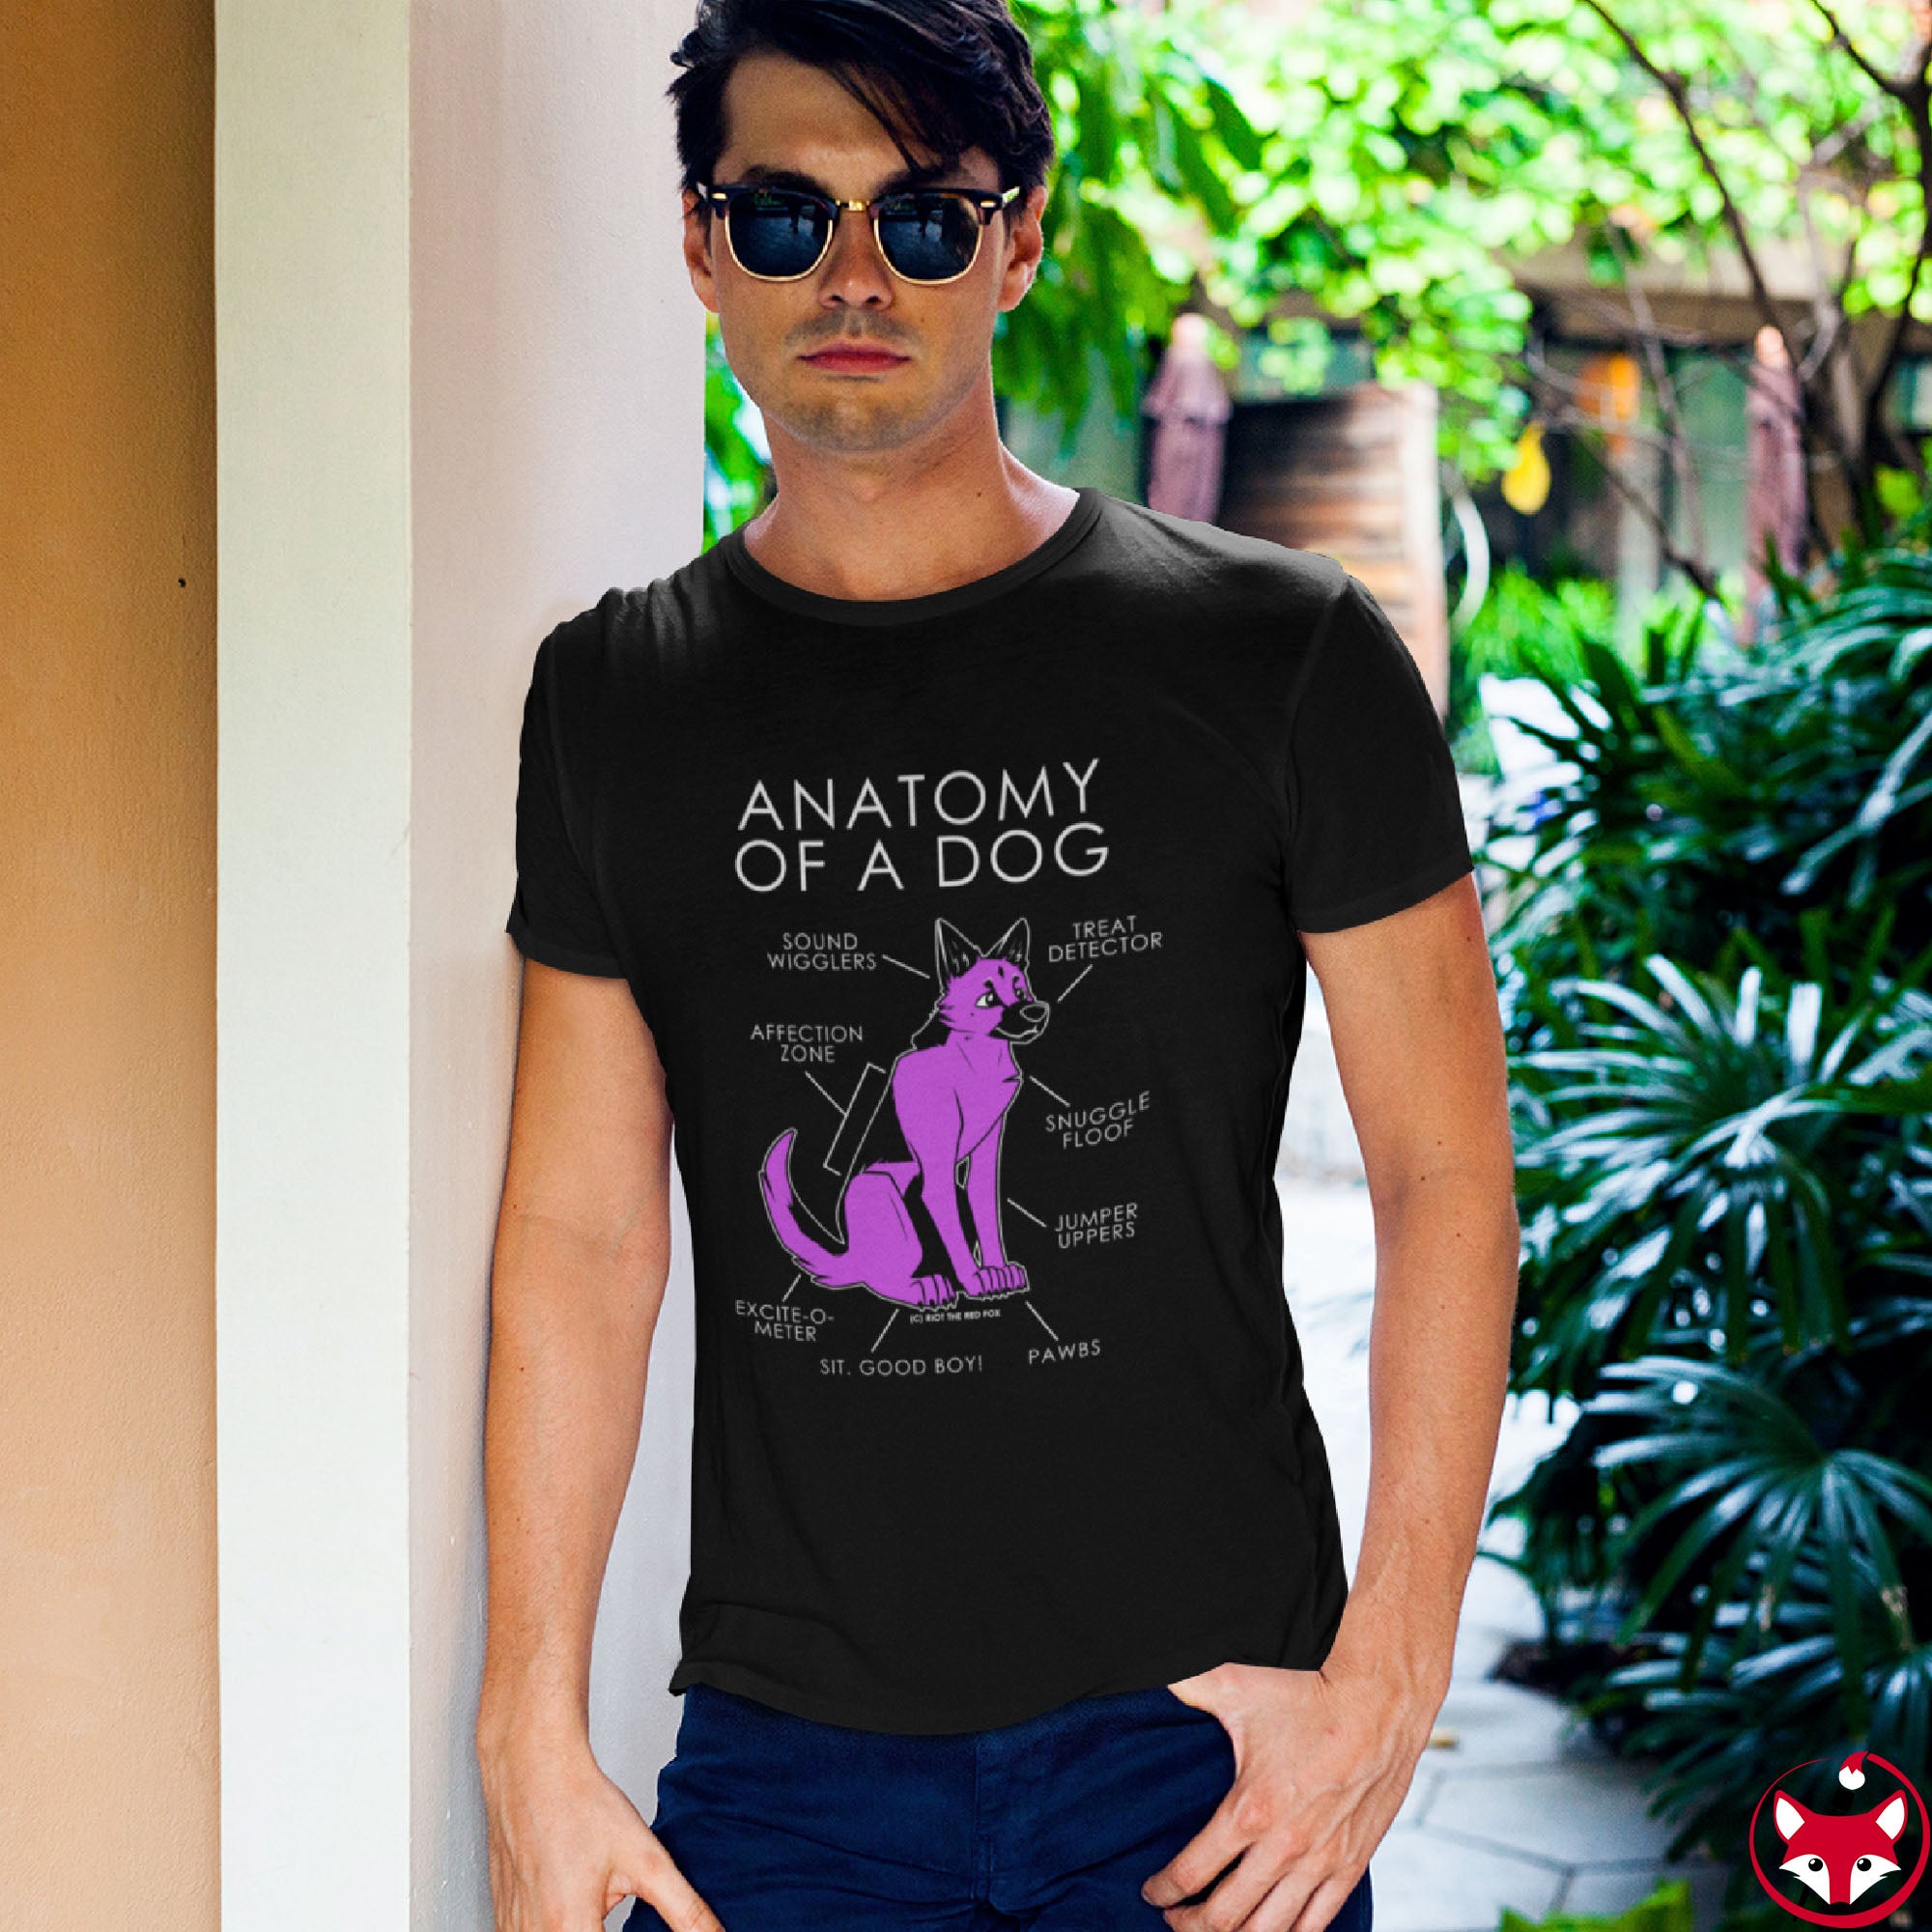 Dog Pink - T-Shirt T-Shirt Artworktee 